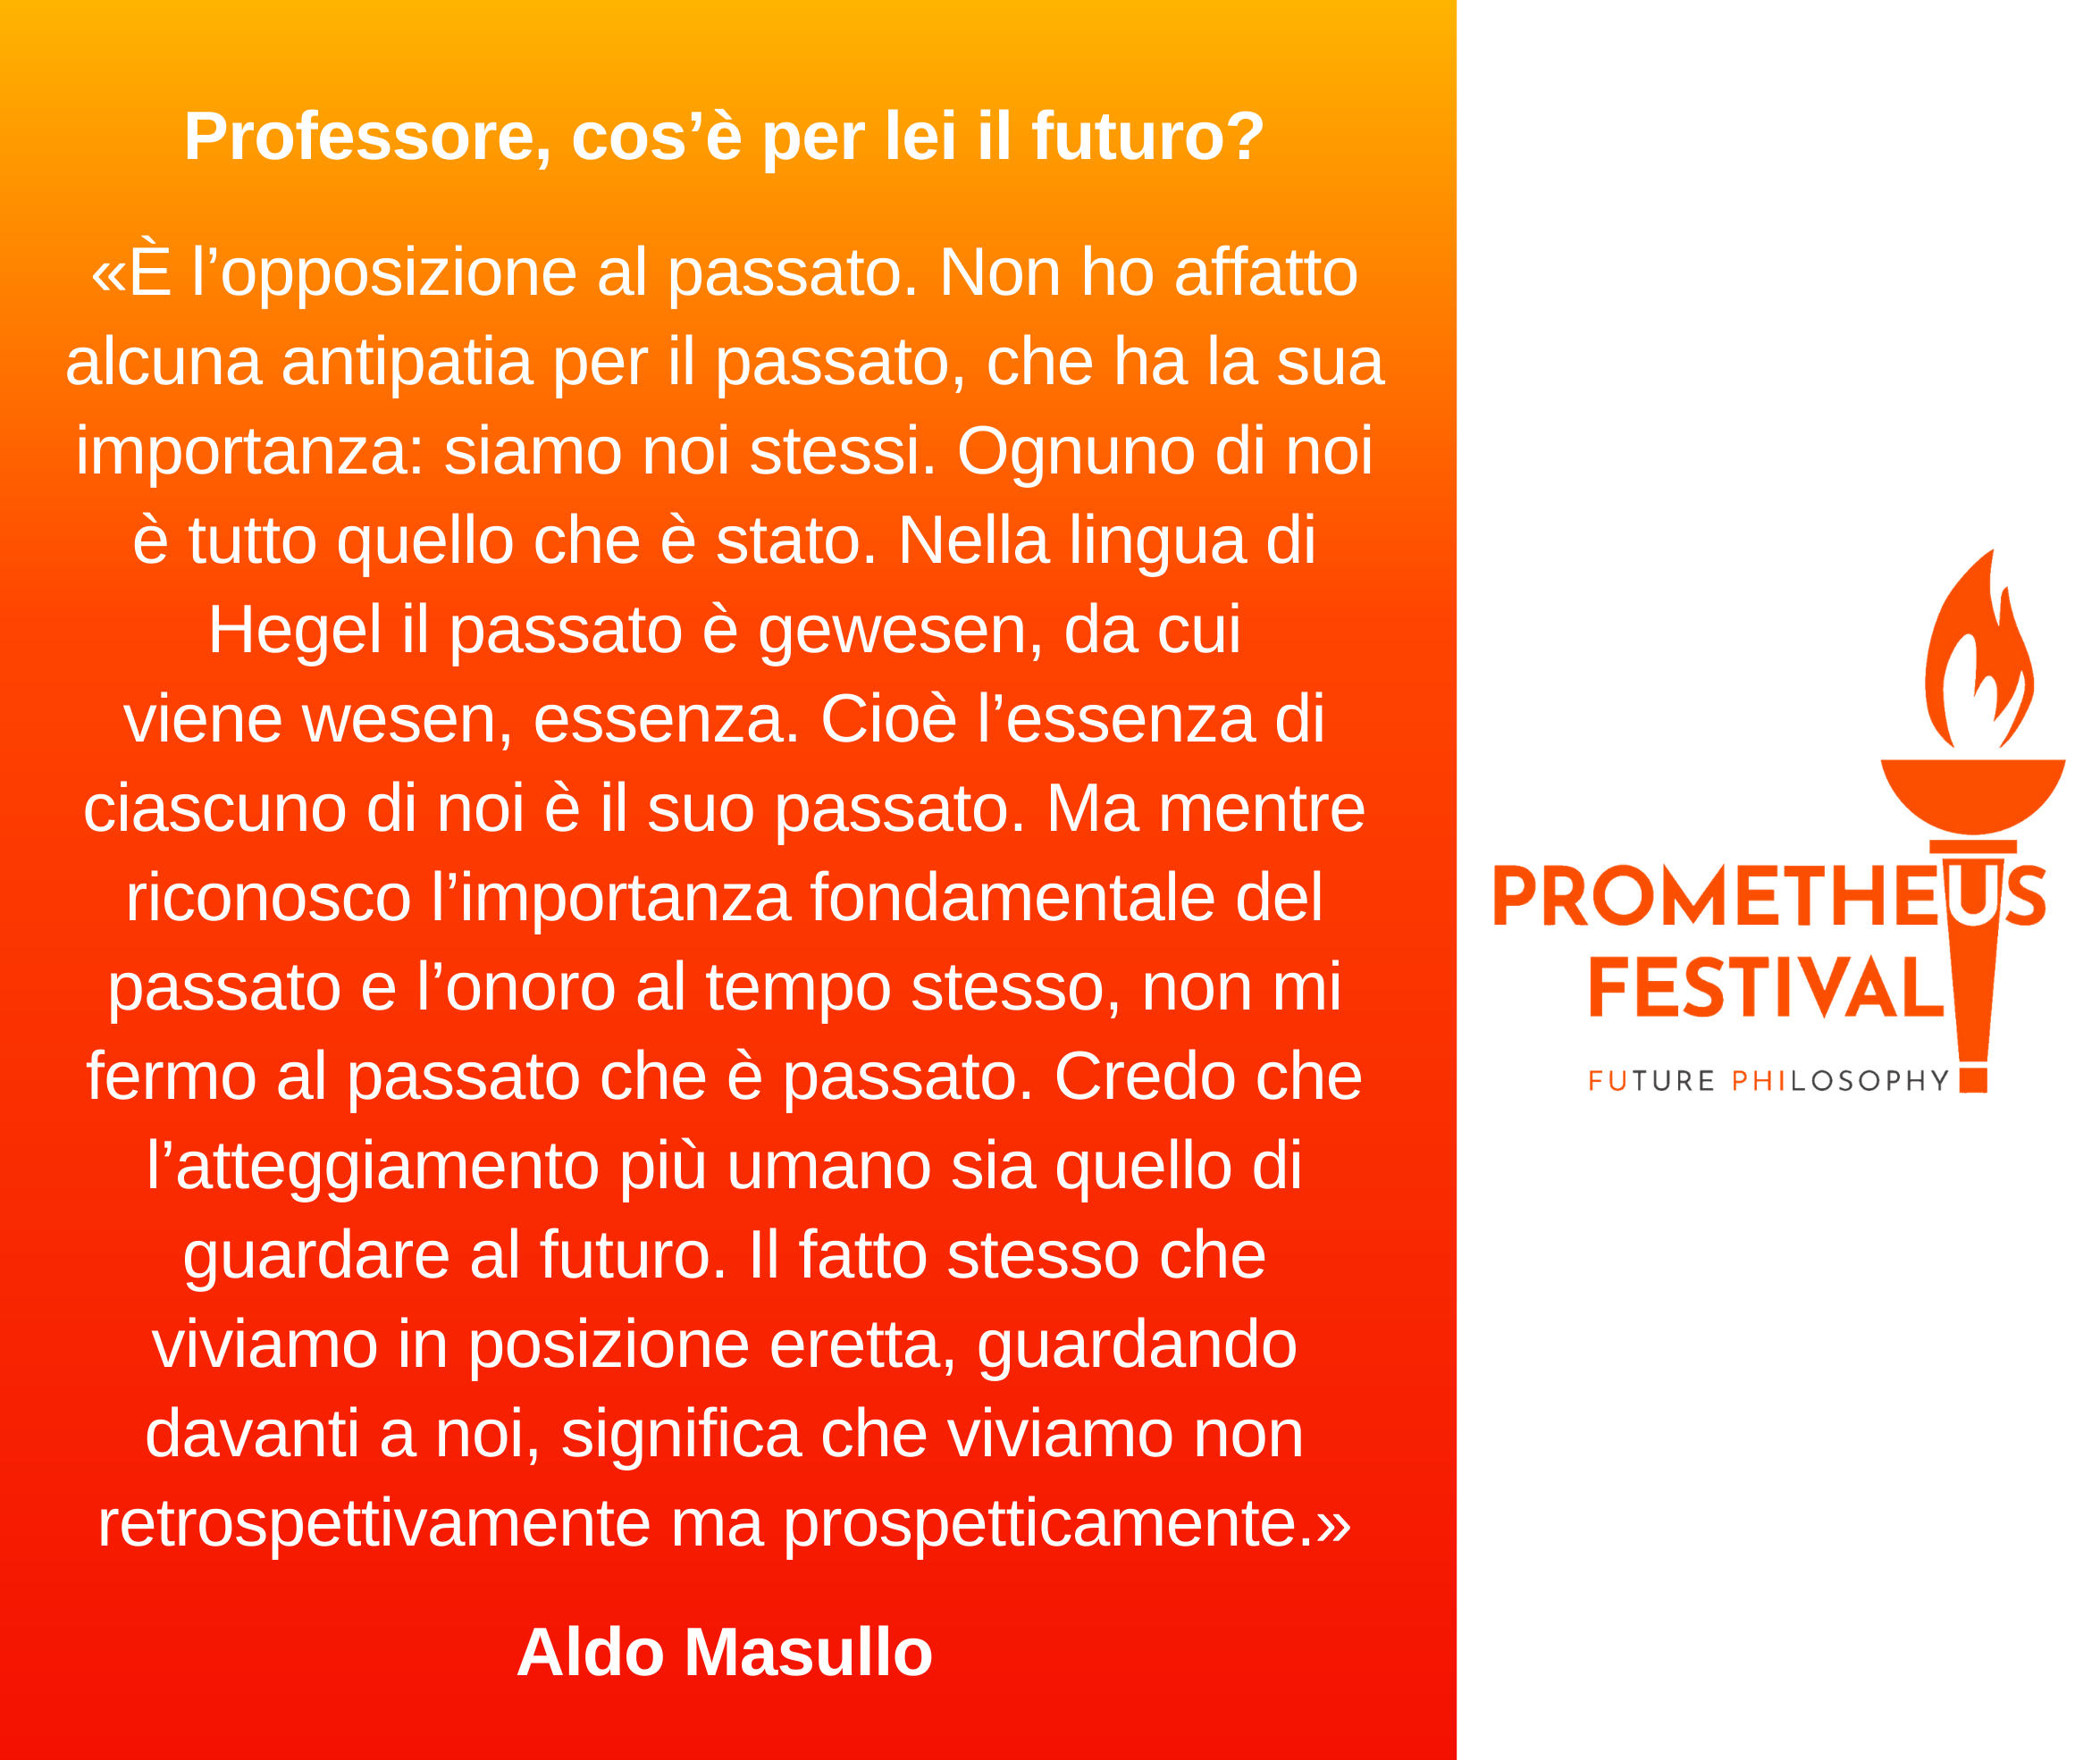 Aldo Masullo Prometheus Festival